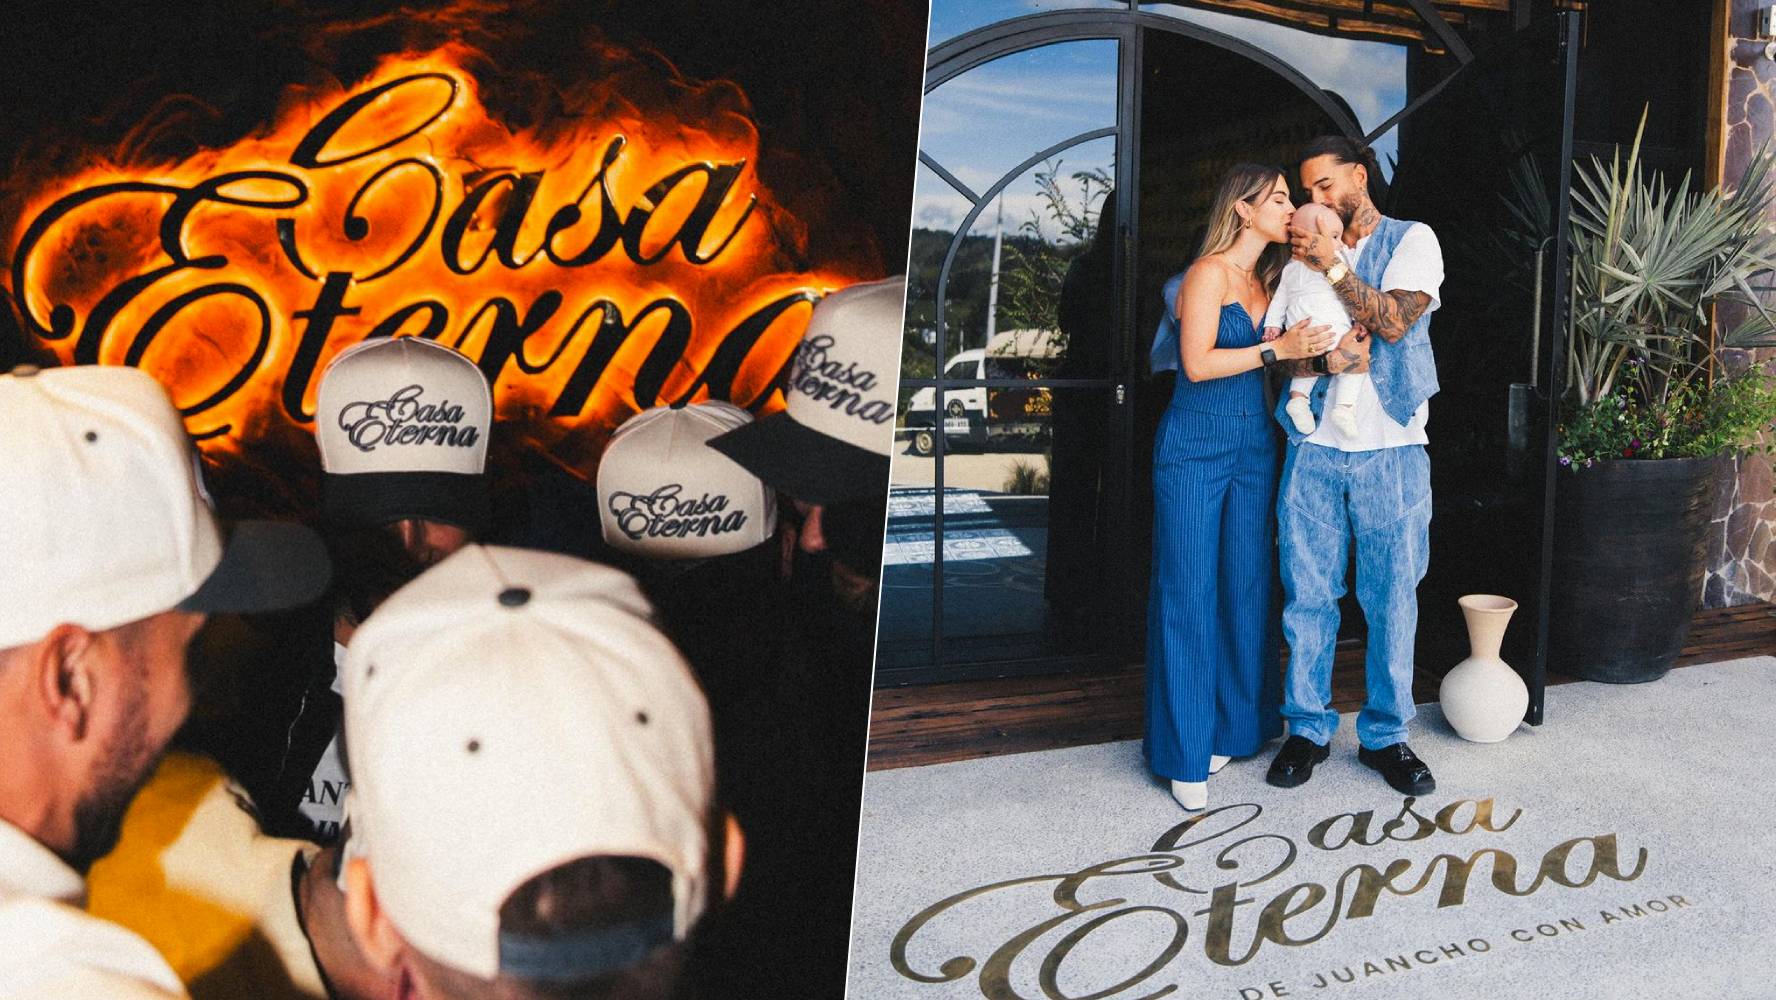 Maluma abrió las puertas de su nuevo restaurante Casa eterna junto a su esposa e hija. (Foto: Instagram @maluma).